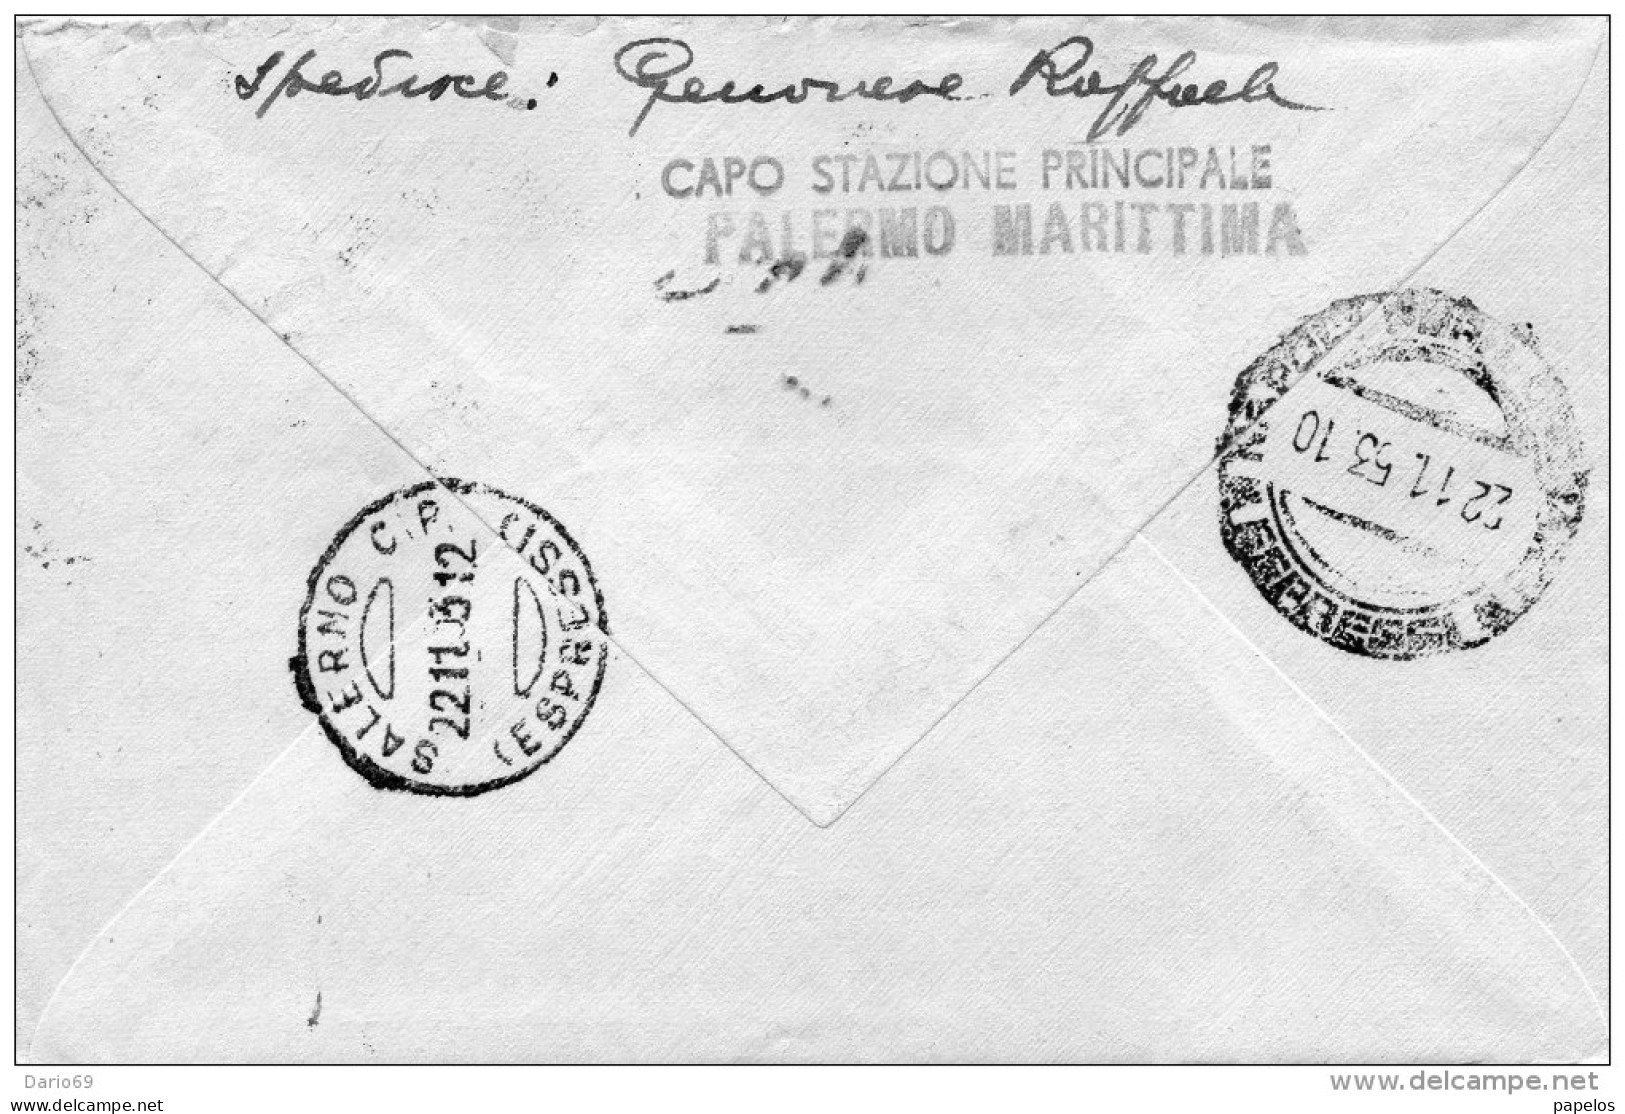 1953 LETTERA ESPRESSO  CON ANNULLO  PALERMO + SALERNO ESPRESSI - Express/pneumatic Mail